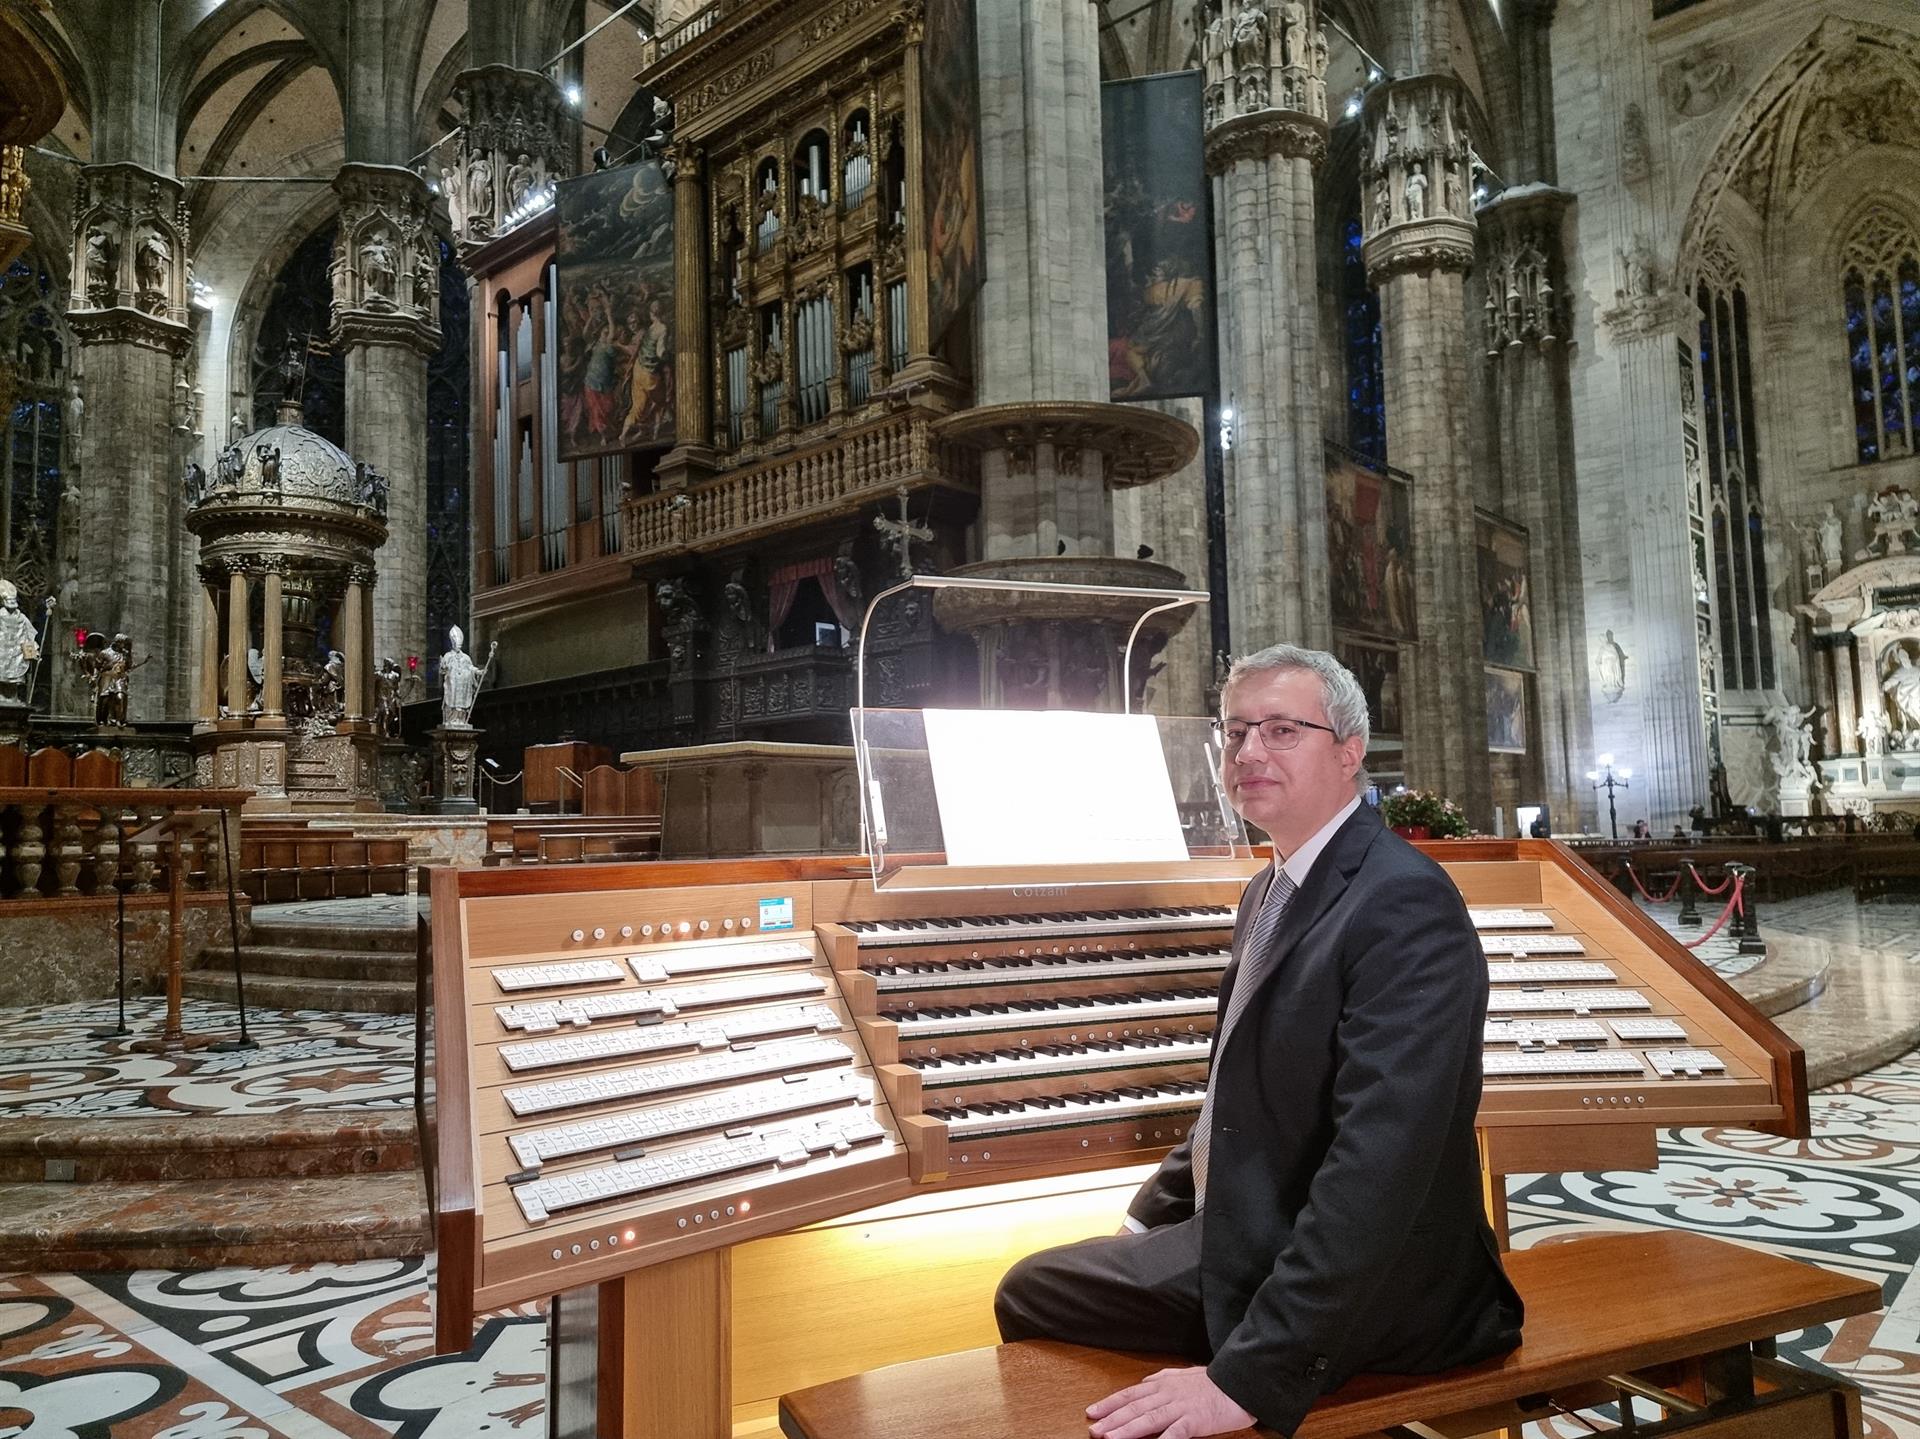 The Organ Sonorities return in the Duomo